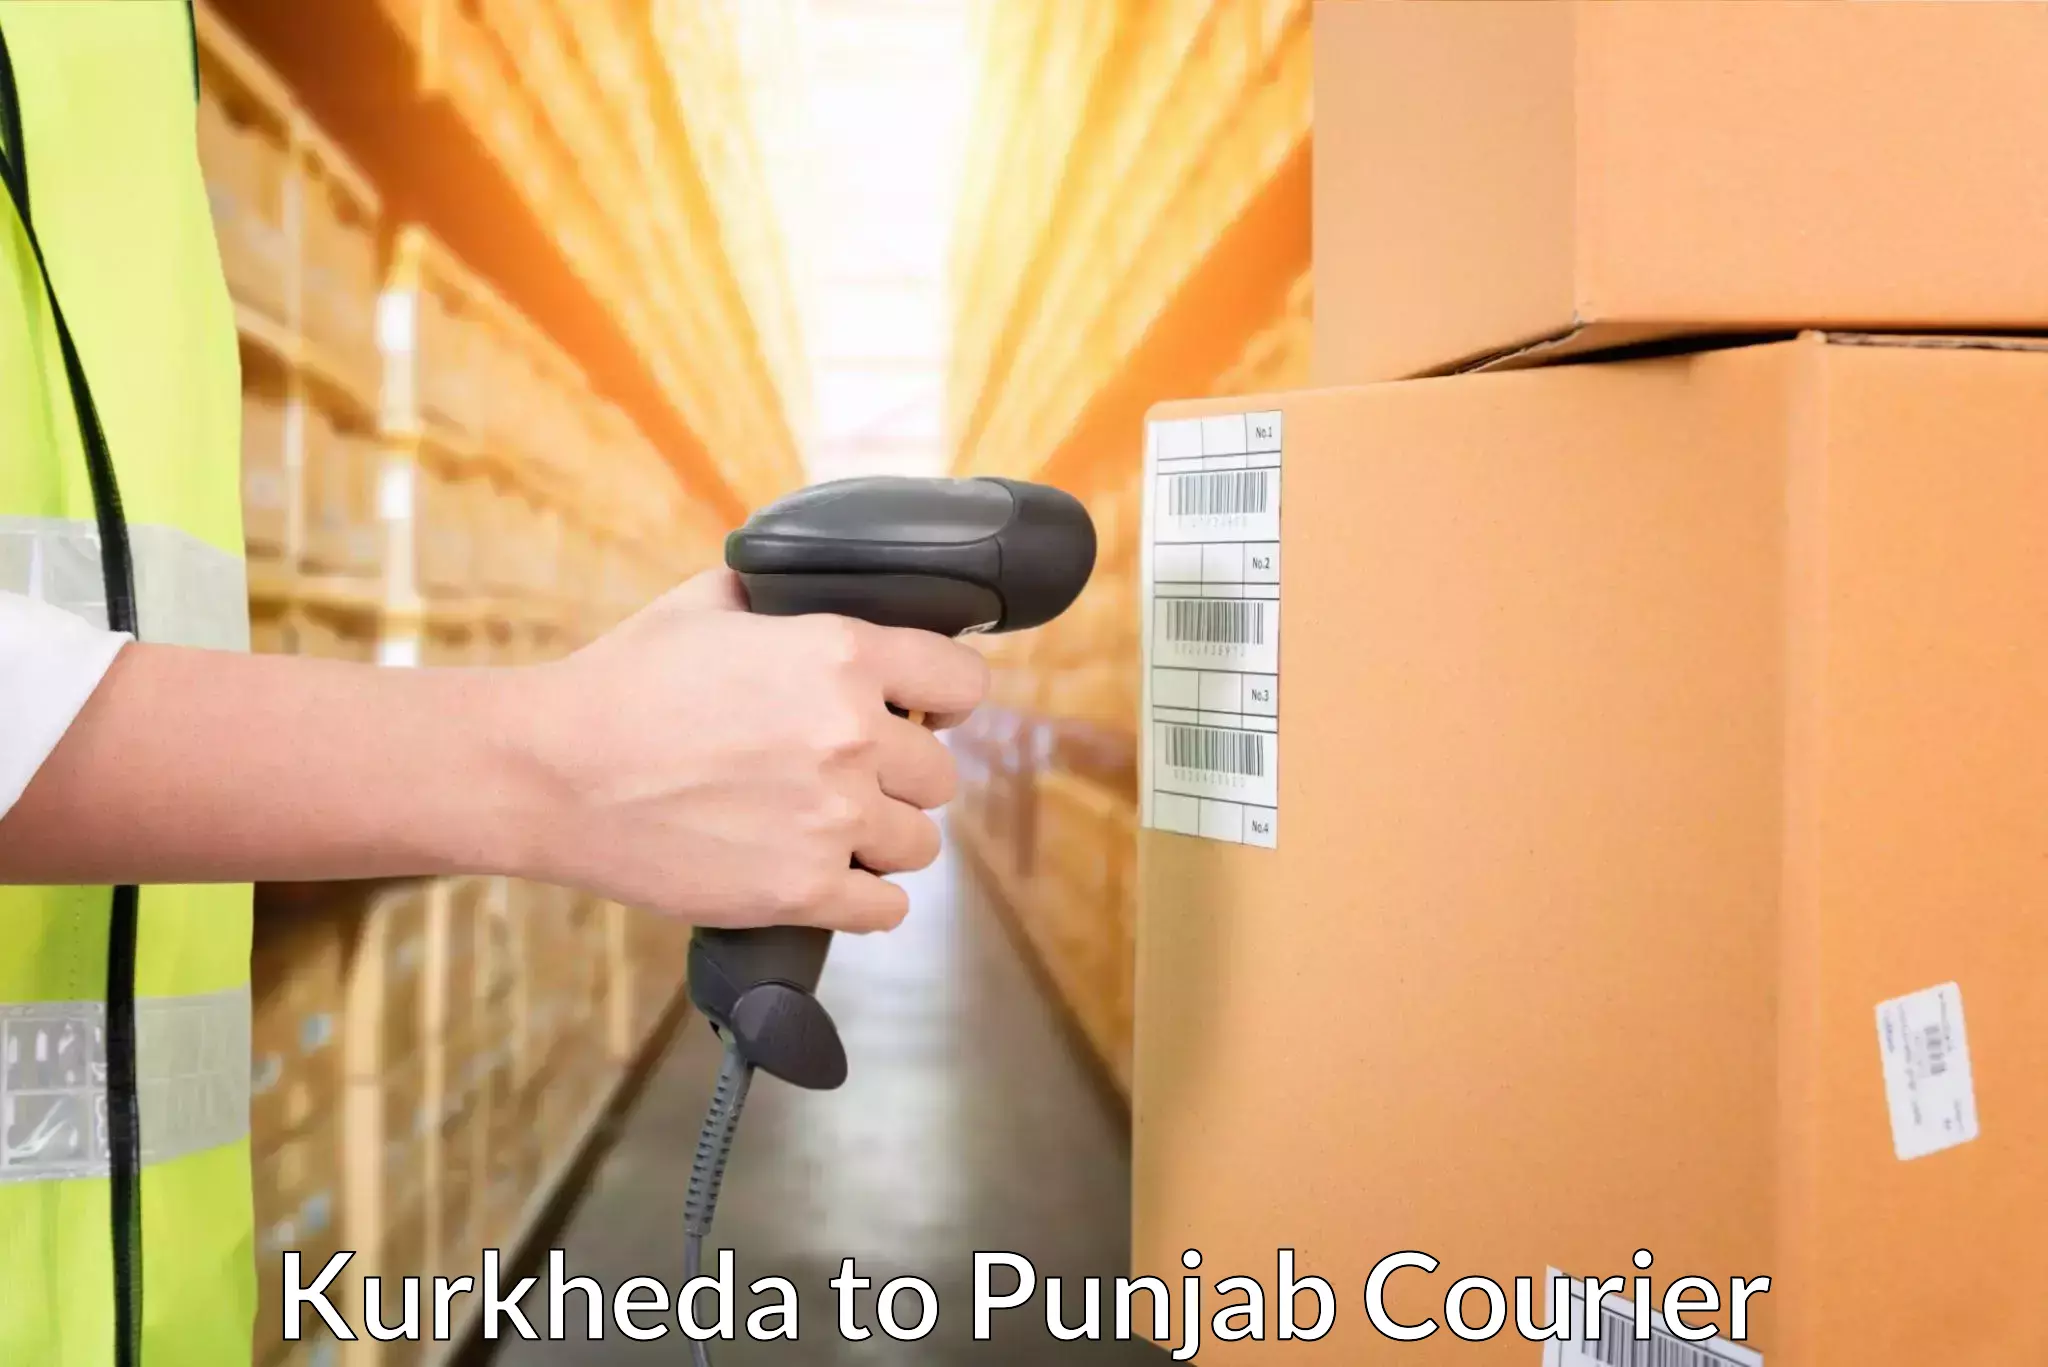 Fast delivery service Kurkheda to Jalandhar